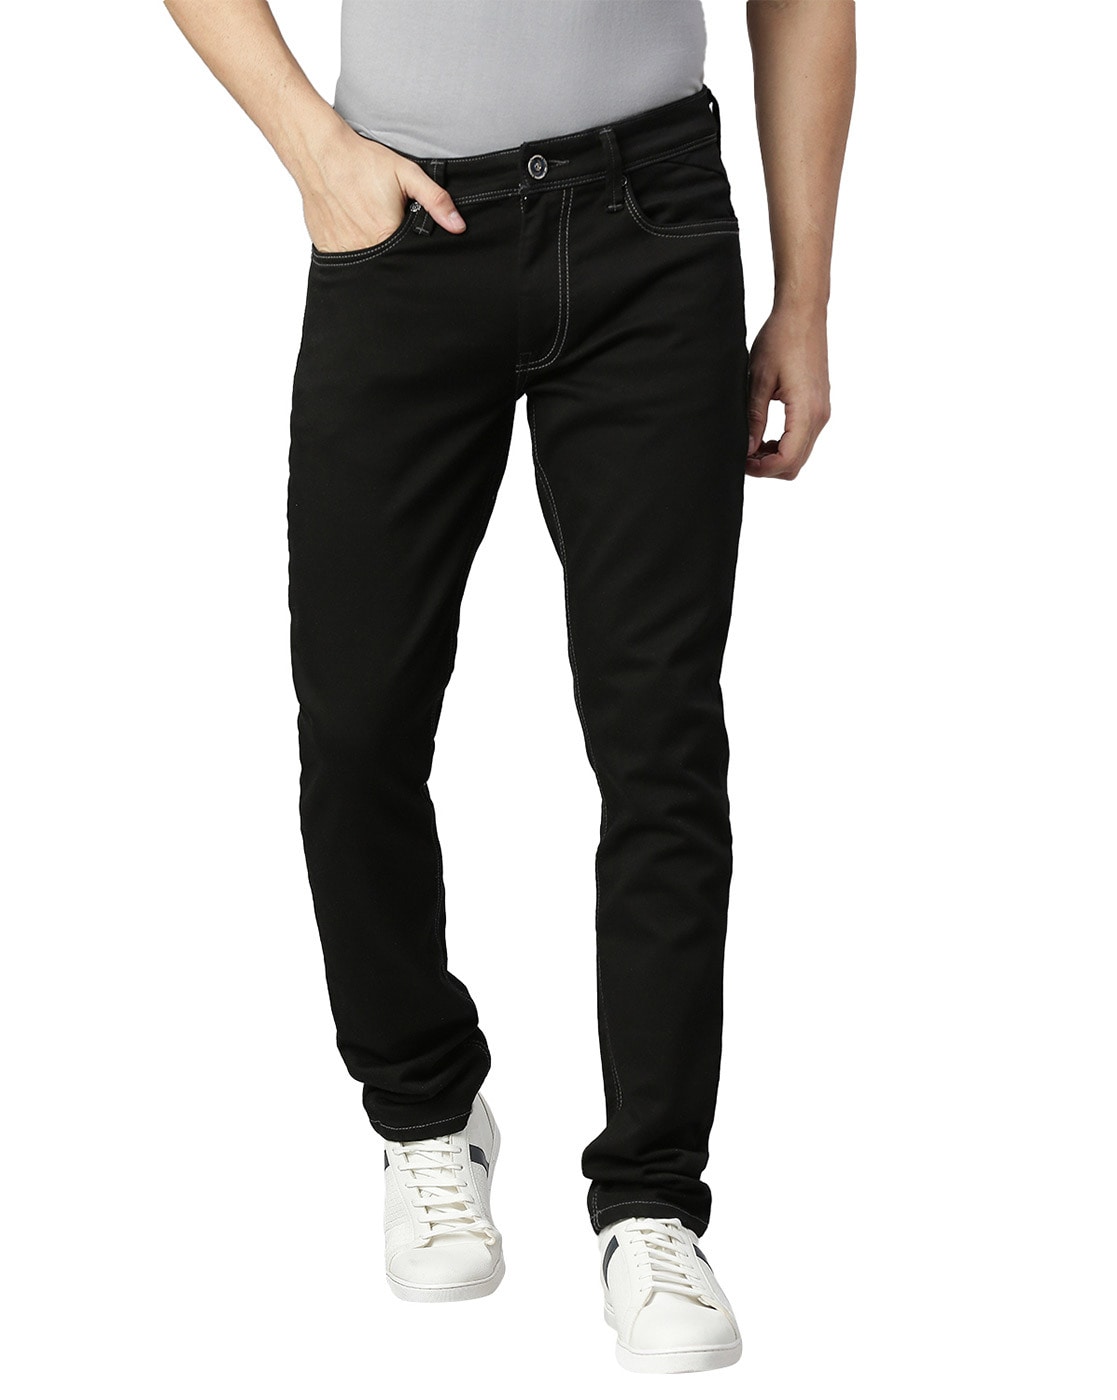 QARSH Slim Men Black Jeans - Buy QARSH Slim Men Black Jeans Online at Best  Prices in India | Flipkart.com